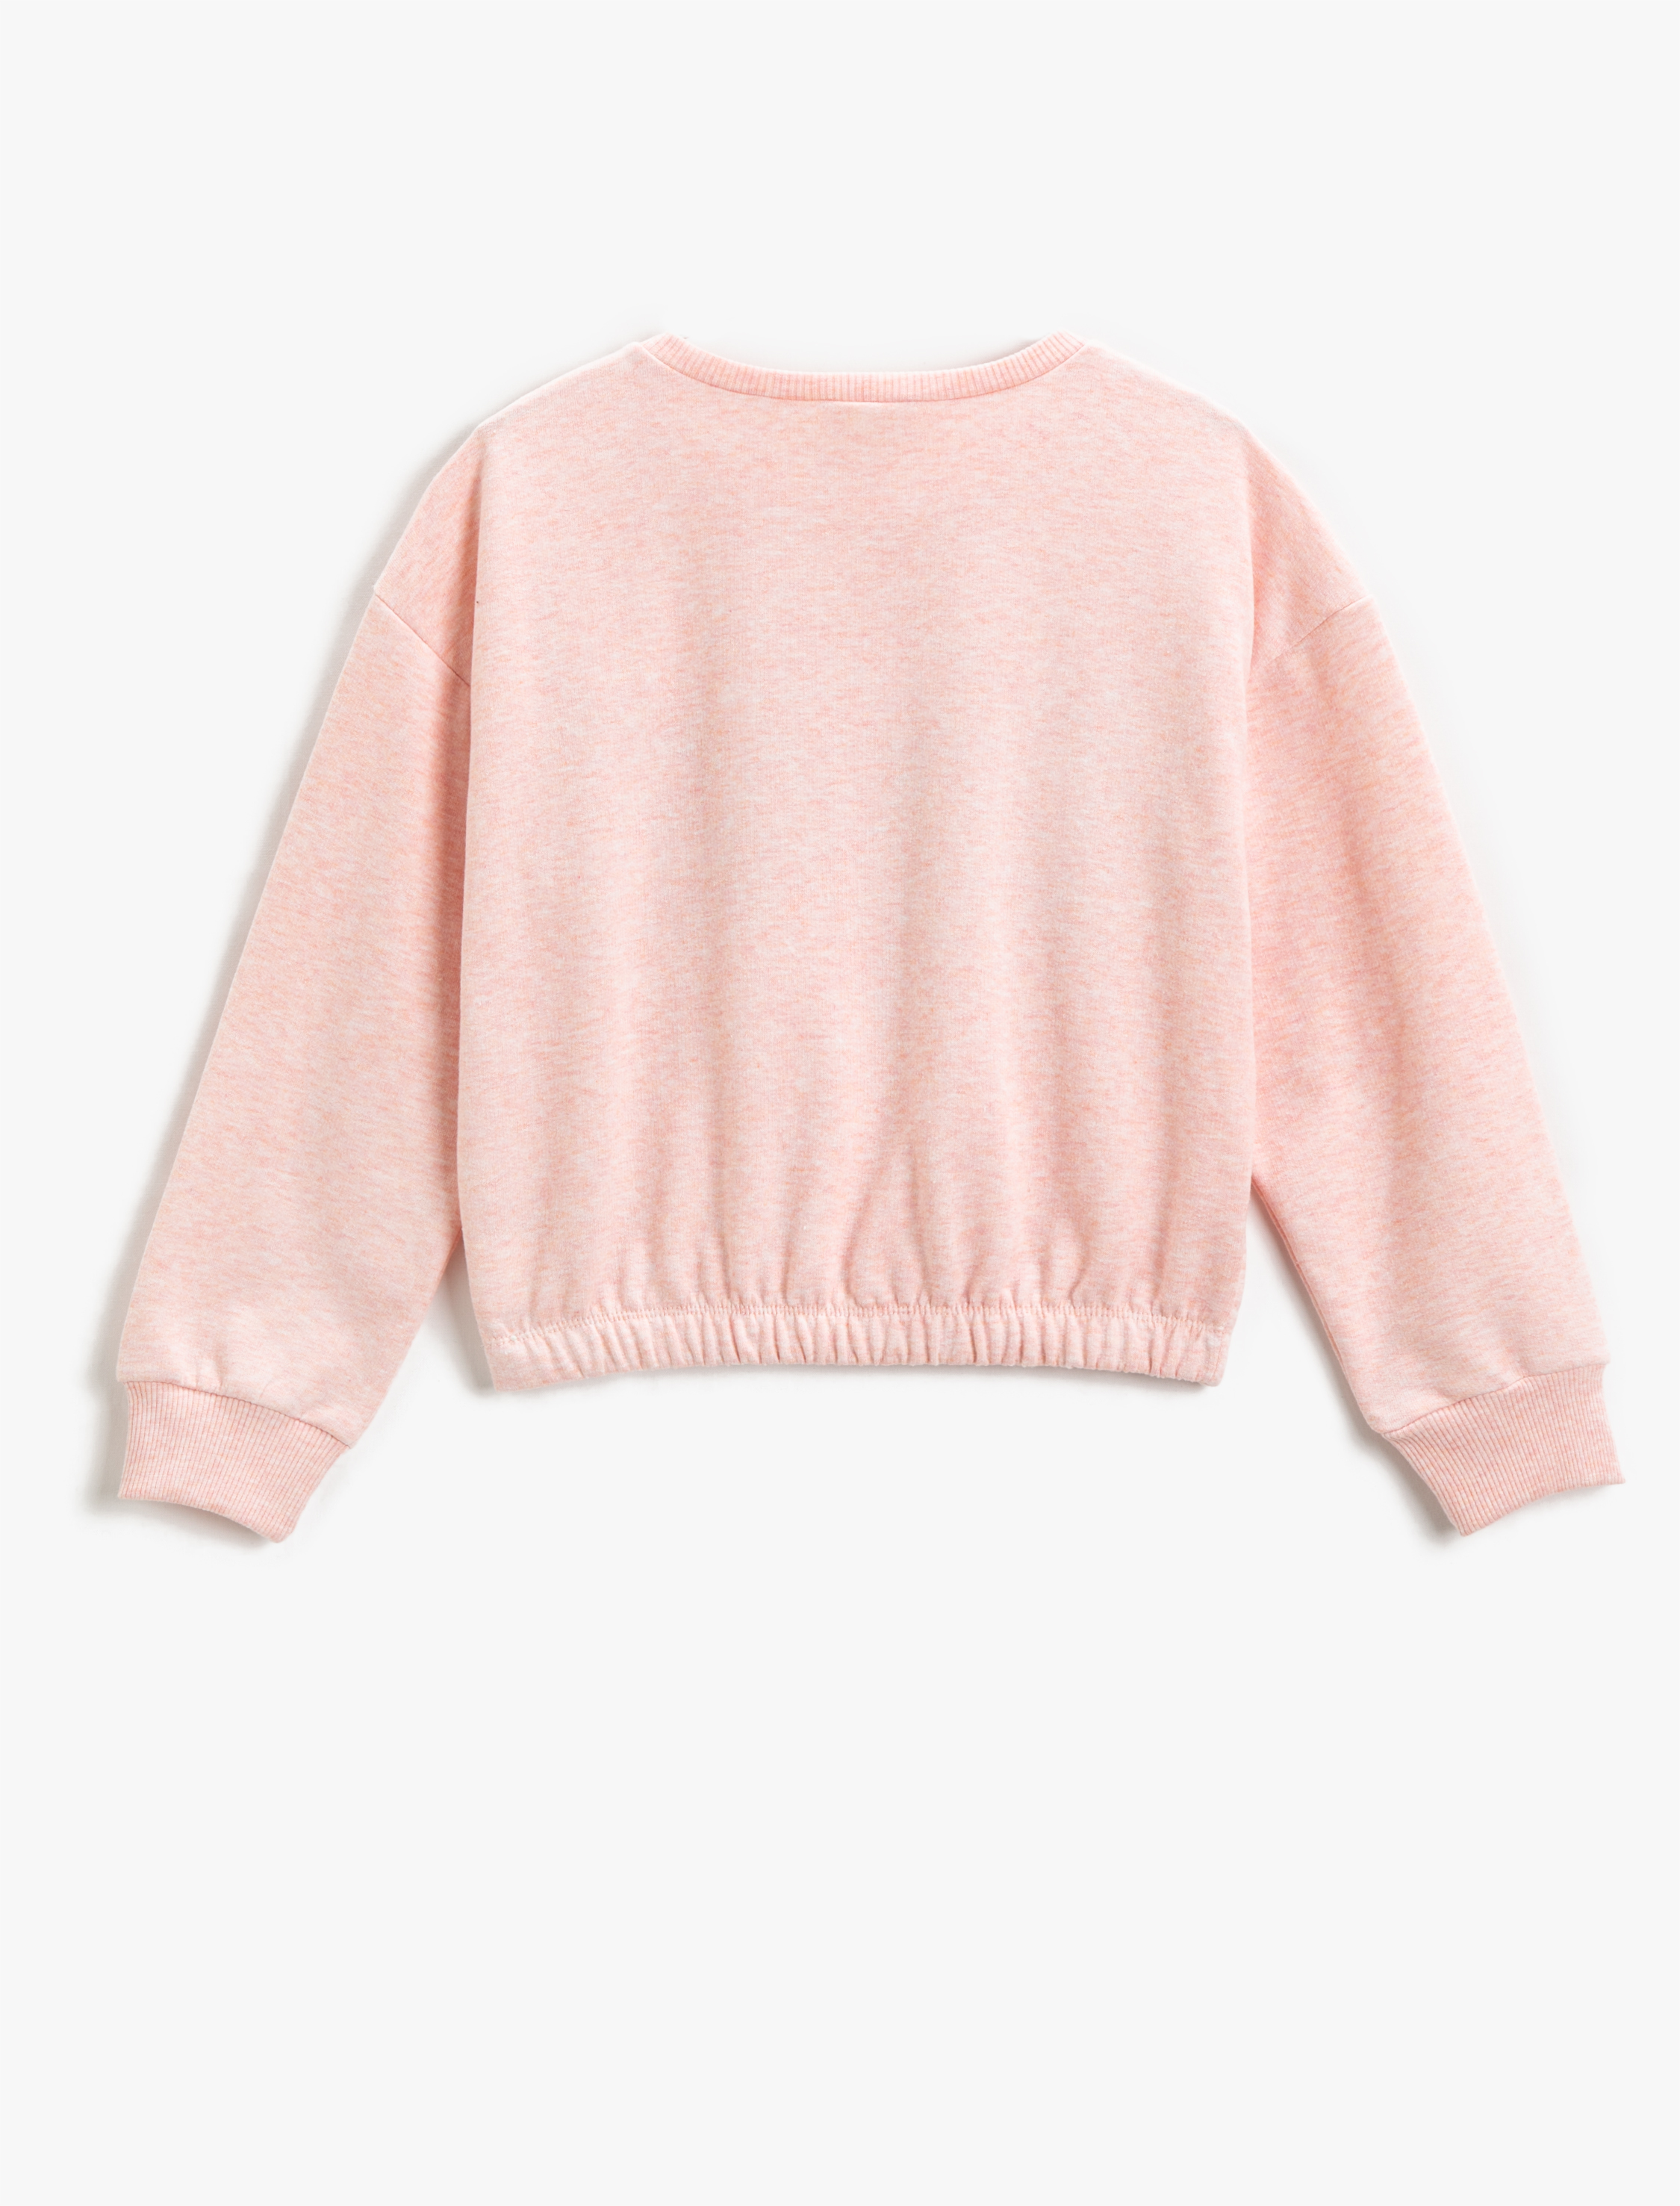 Pink XS discount 67% WOMEN FASHION Jumpers & Sweatshirts Jumper Knitted Bershka jumper 